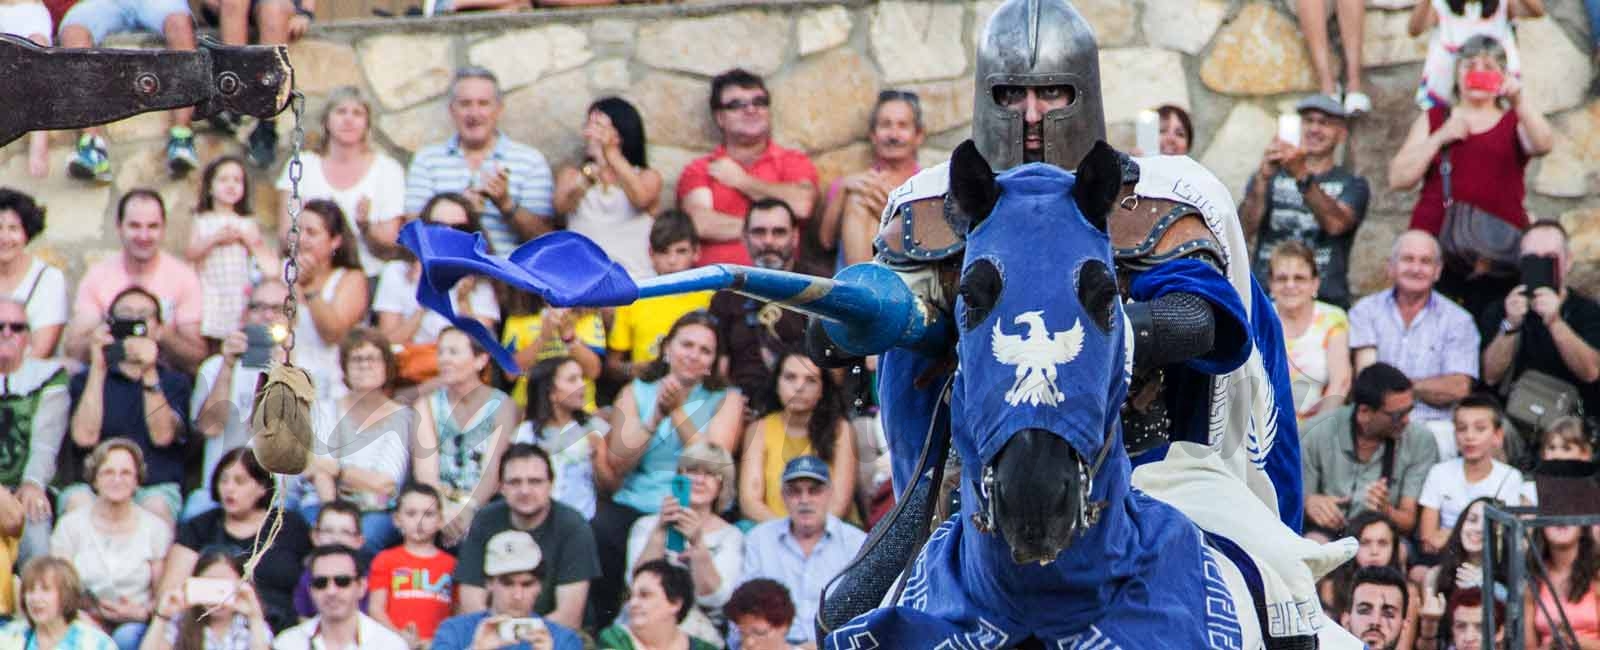 Ávila invita a soñar en clave medieval